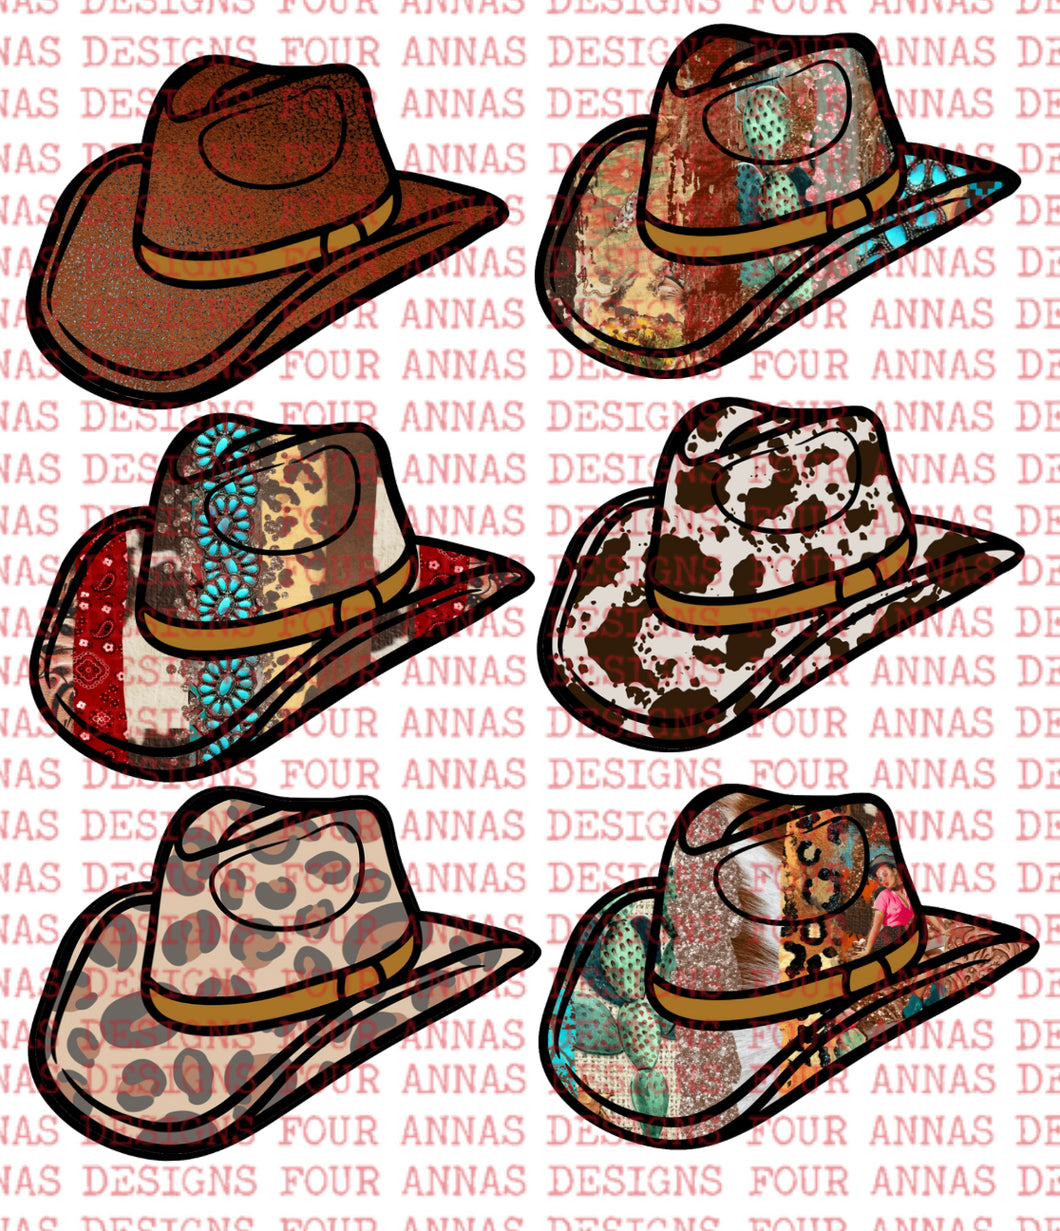 Western cowboy hats